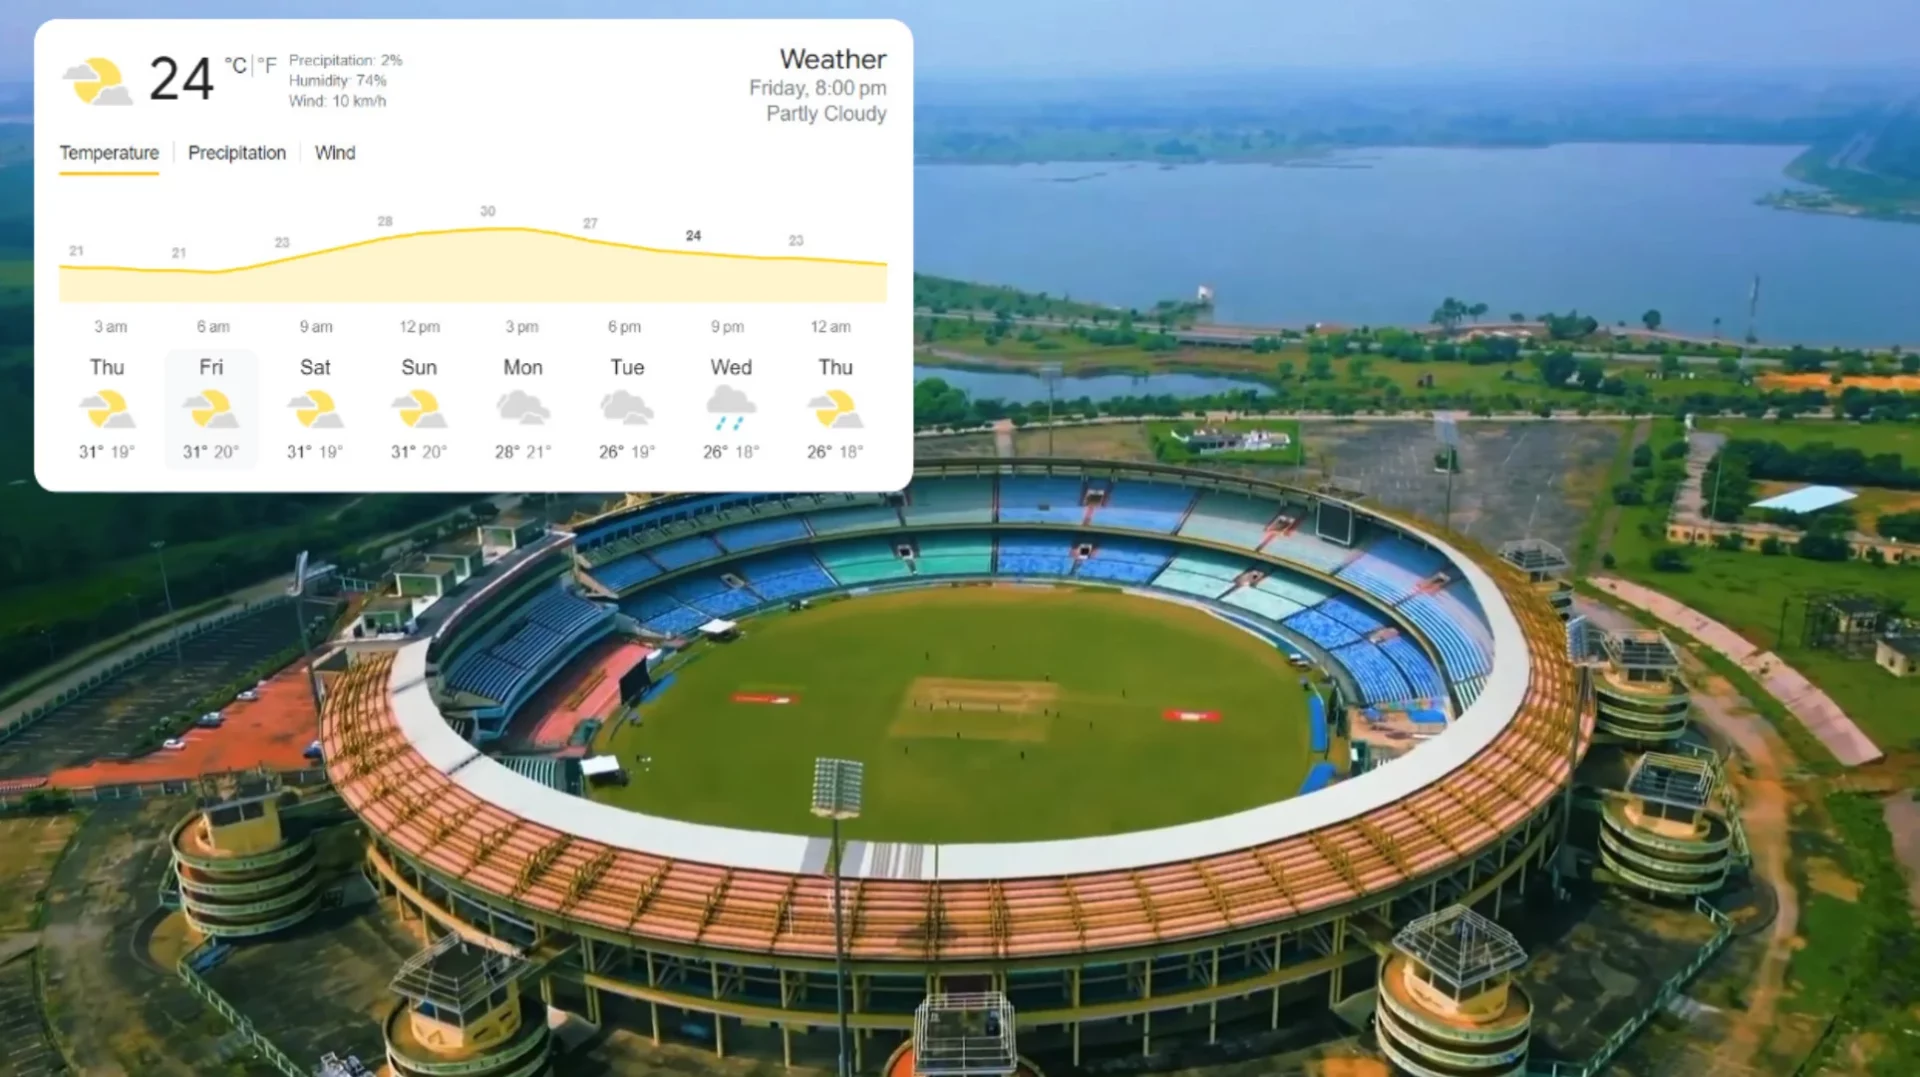 Raipur Weather Forecast